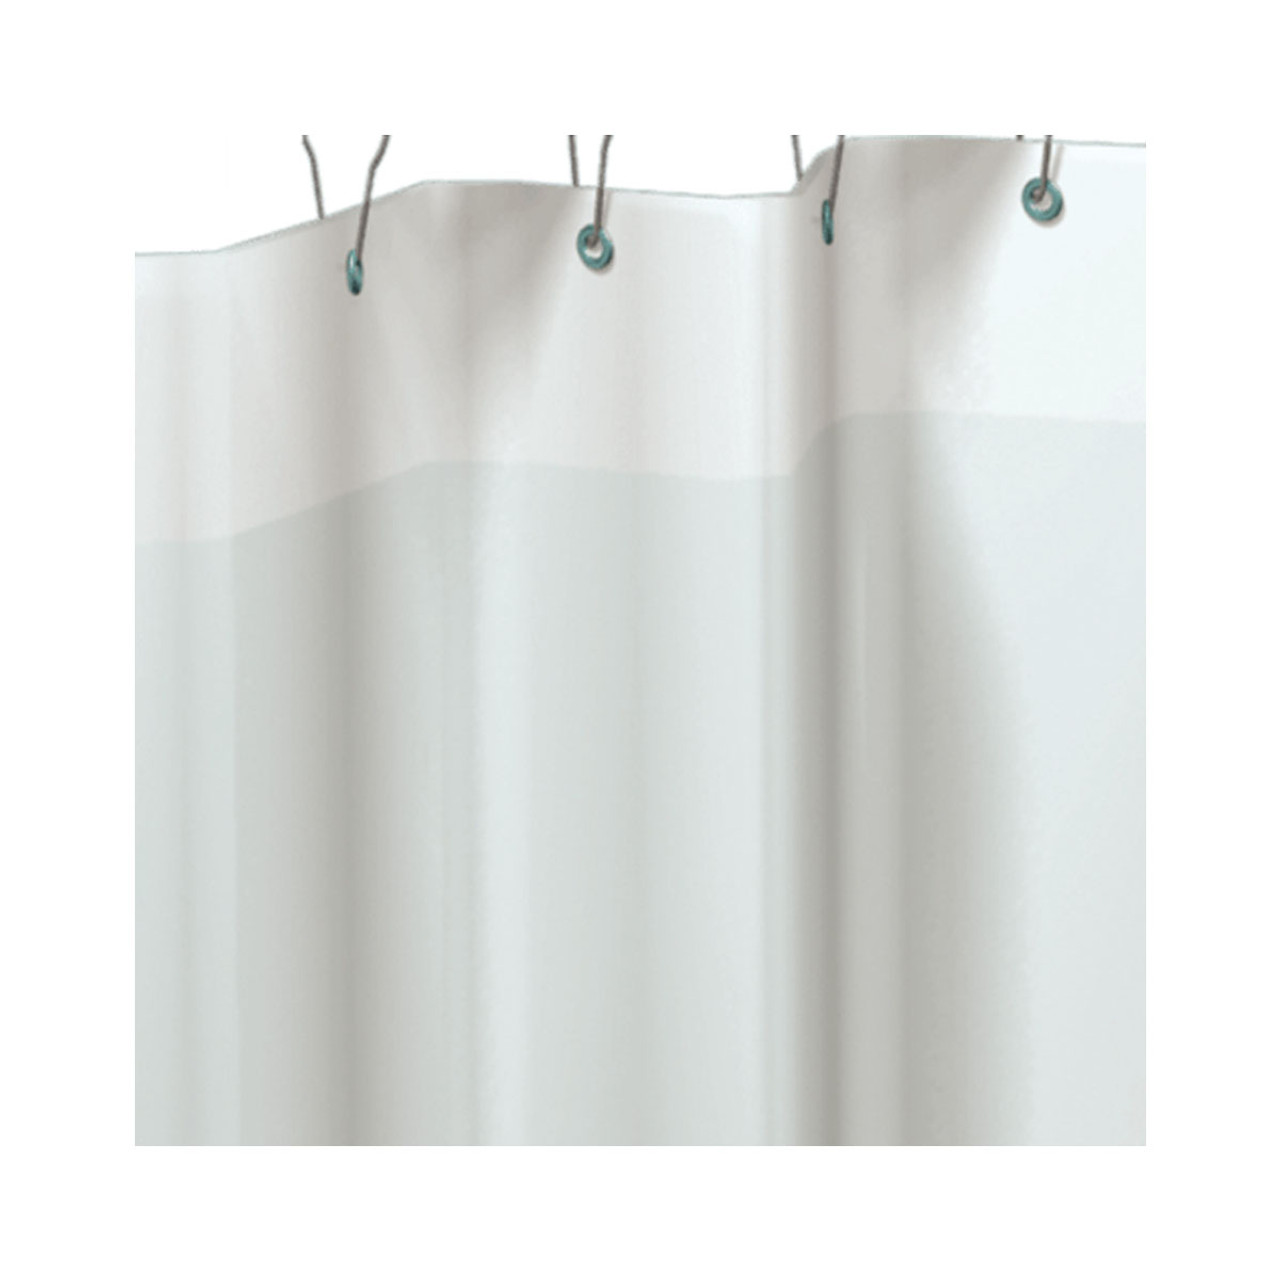 Shower Curtain Roller Rings In Bulk | Ball Chain Mfg